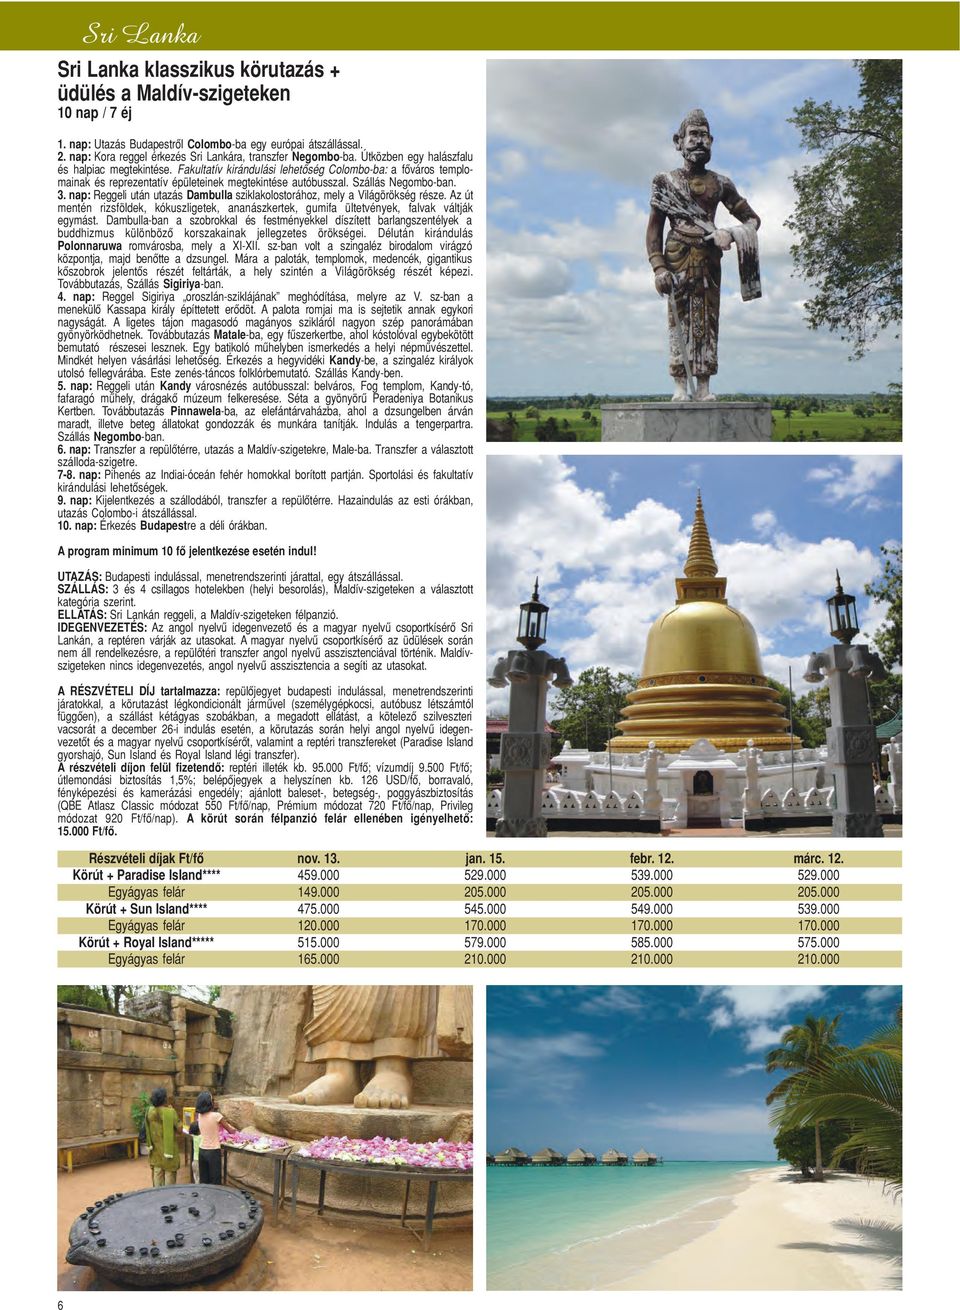 Fakultatív kirándulási lehetôség Colombo-ba: a fôváros templomainak és reprezentatív épületeinek megtekintése autóbusszal. Szállás Negombo-ban. 3.